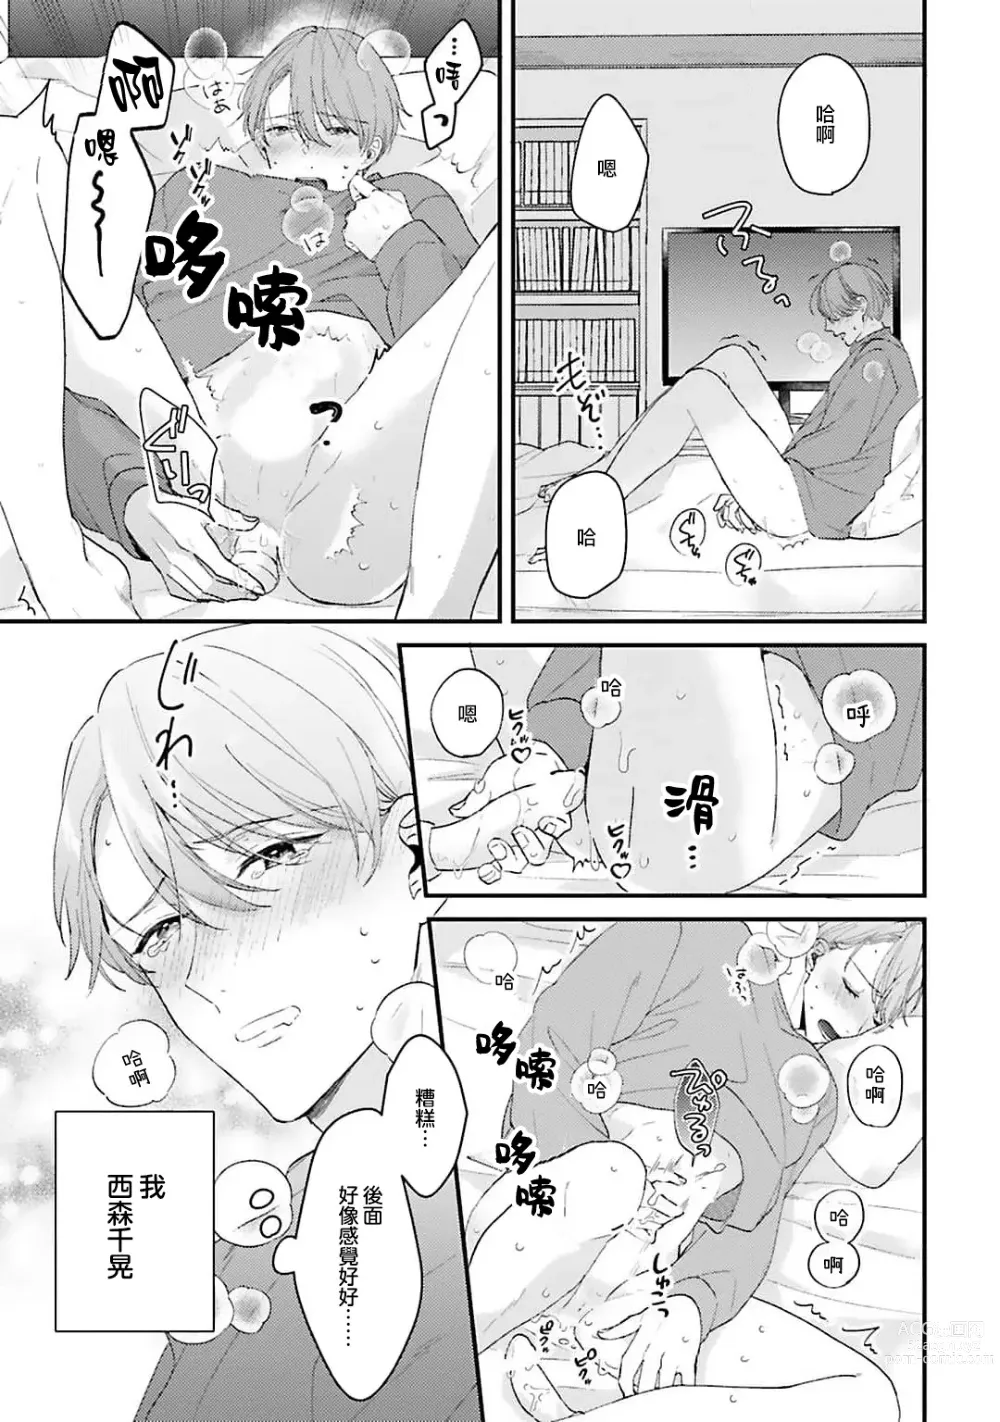 Page 2 of manga 绽放的恋爱皆为醉与甜1